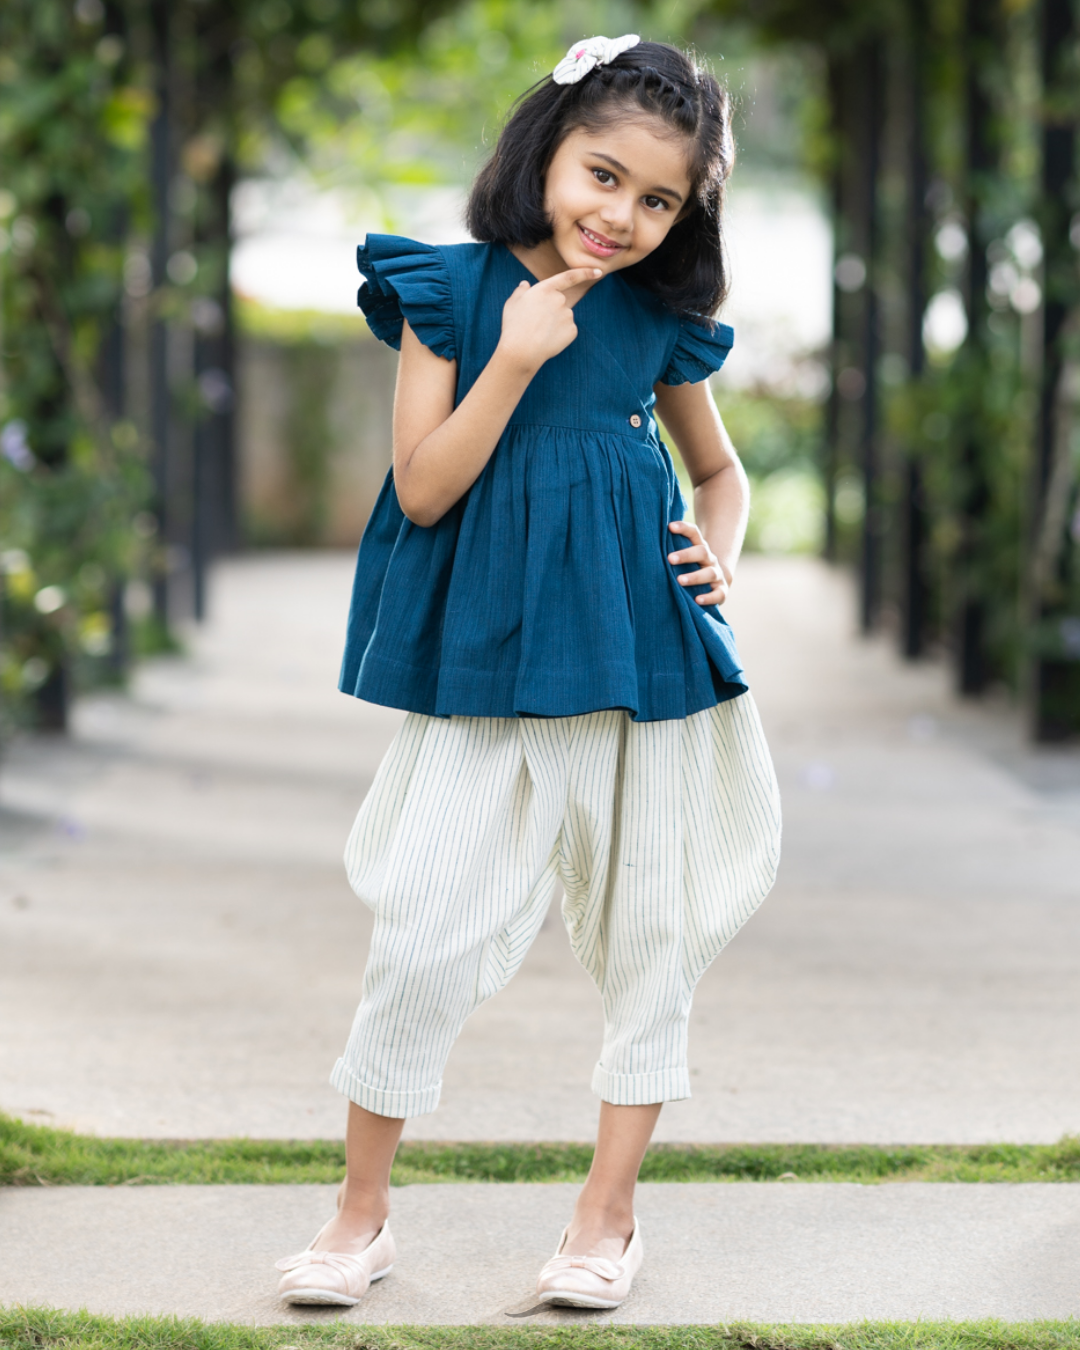 Chất lượng, an toàn và thân thiện với môi trường là những tiêu chí quan trọng của quần áo Organic Kids Clothing. Xem ảnh để tìm hiểu thêm về sự khác biệt của các sản phẩm quần áo hữu cơ cho trẻ em. 